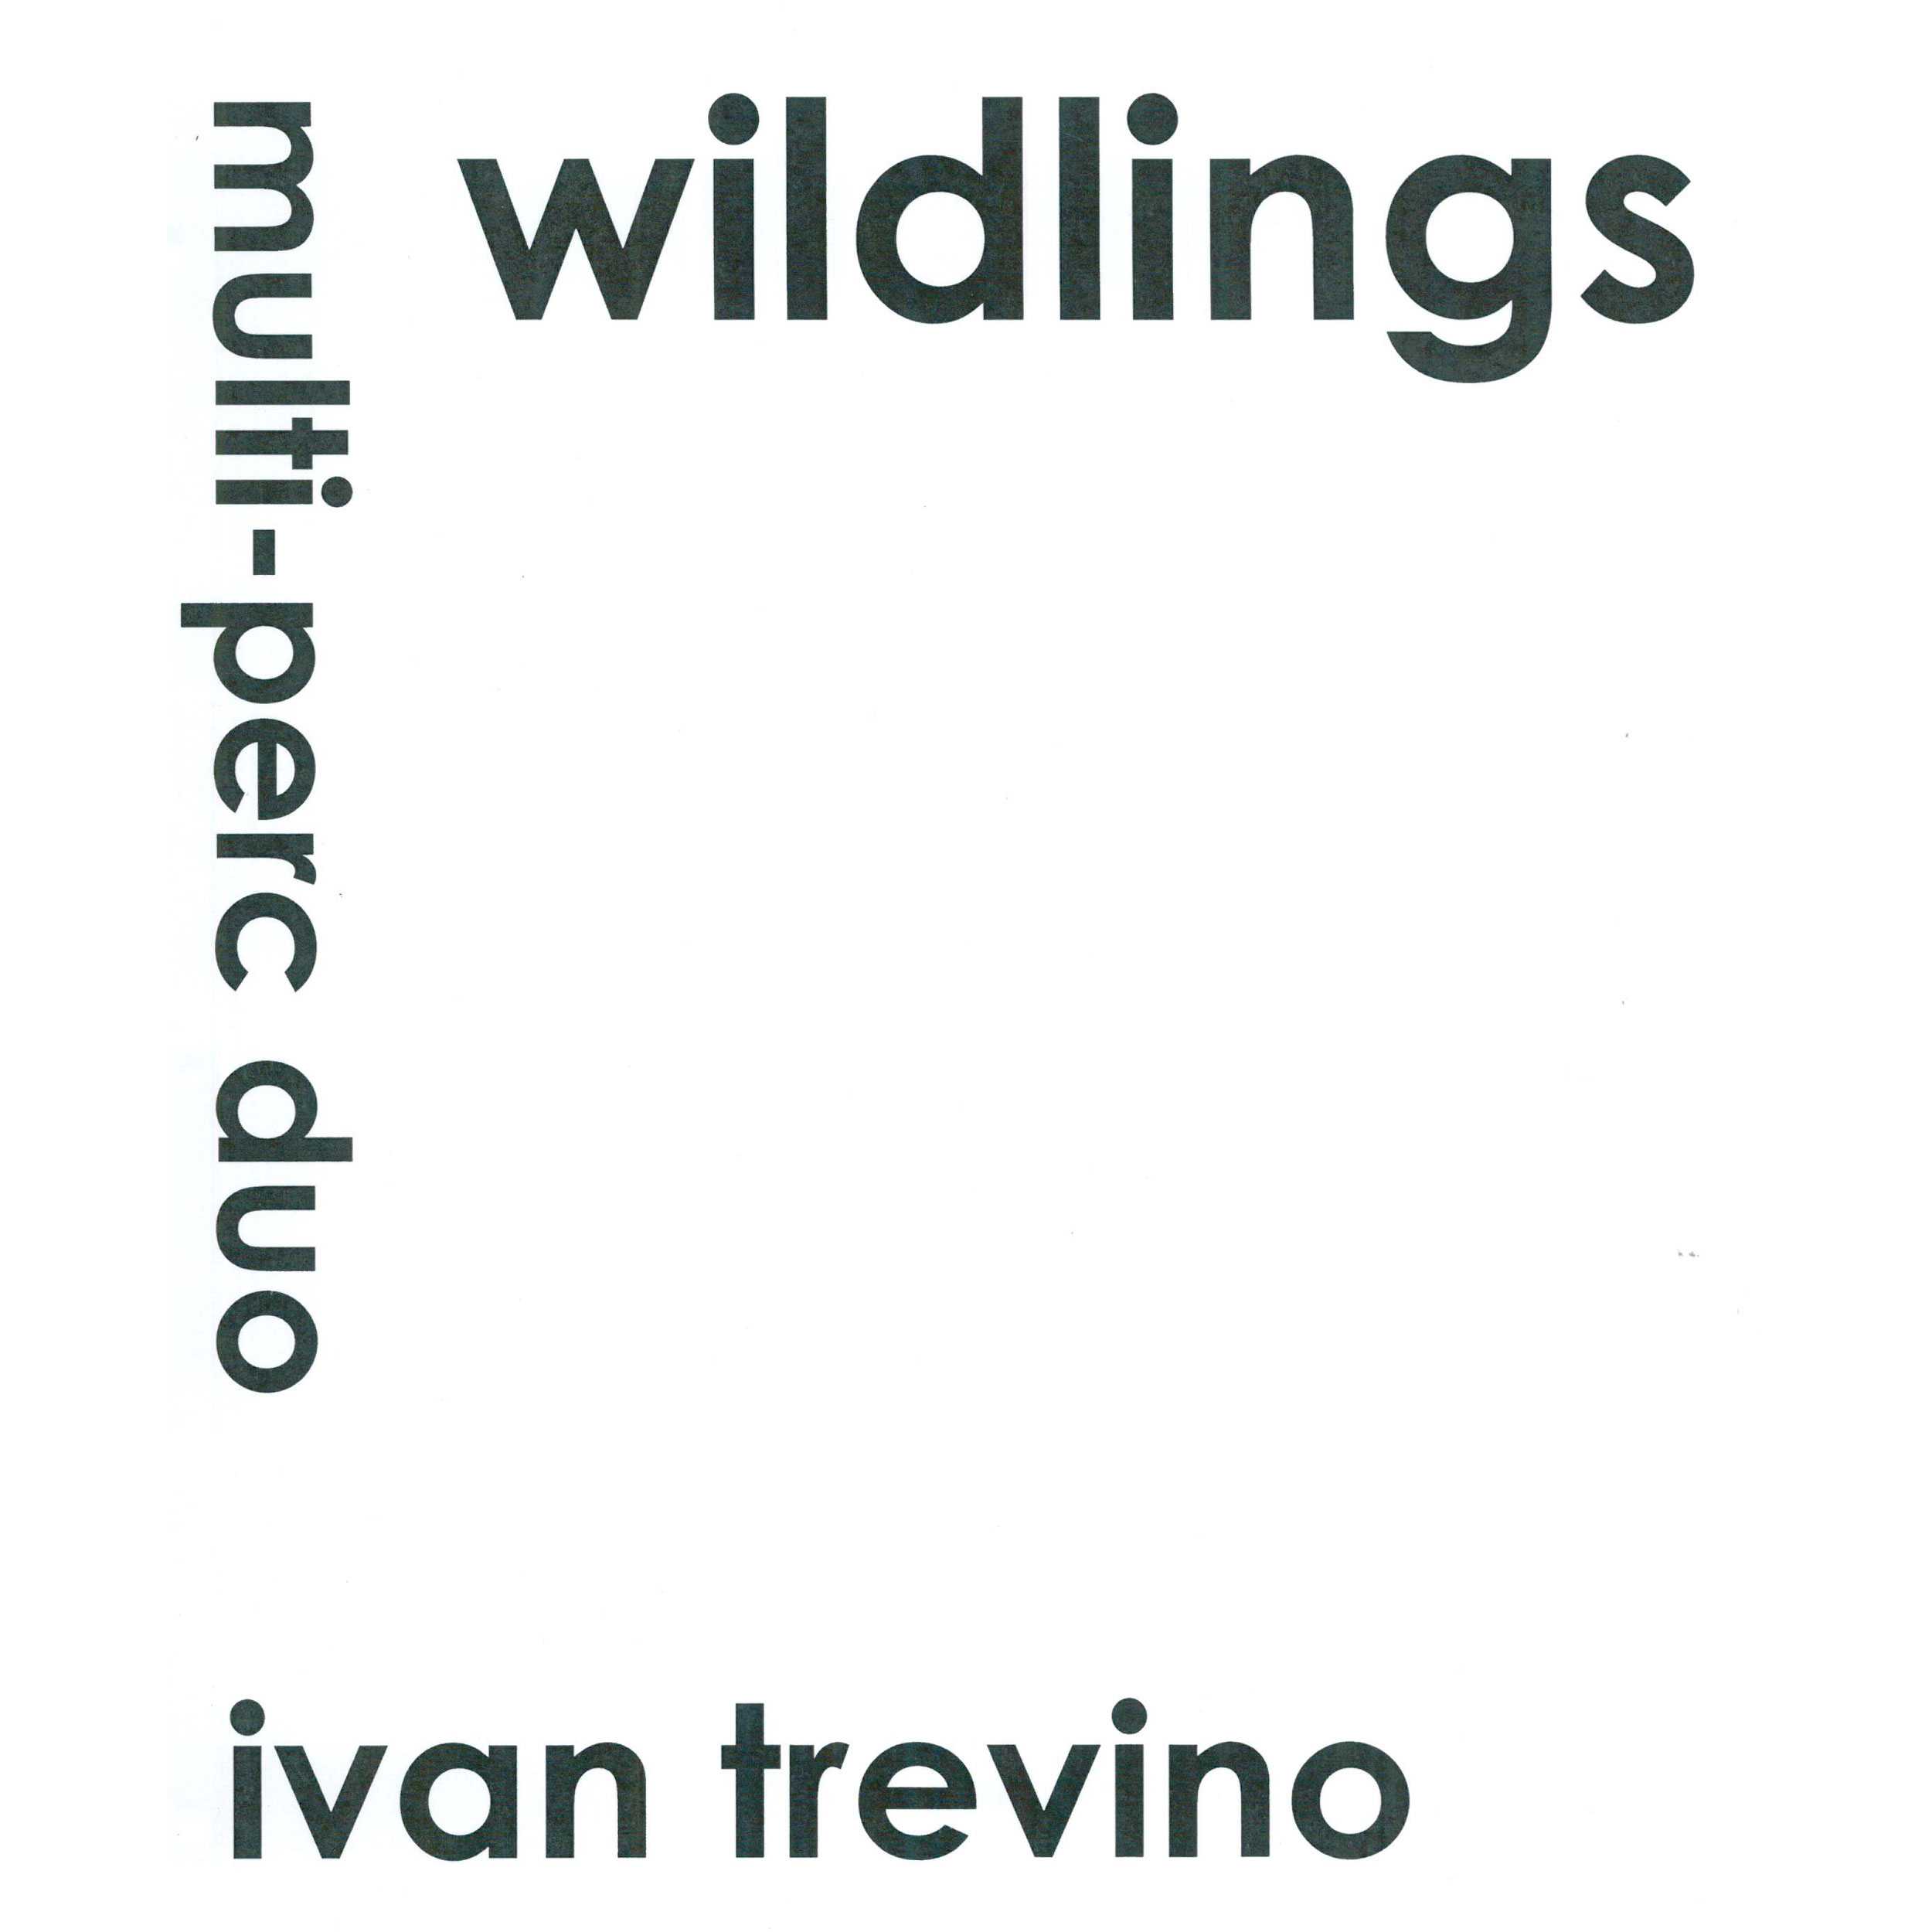 Wildlings by Ivan Trevino